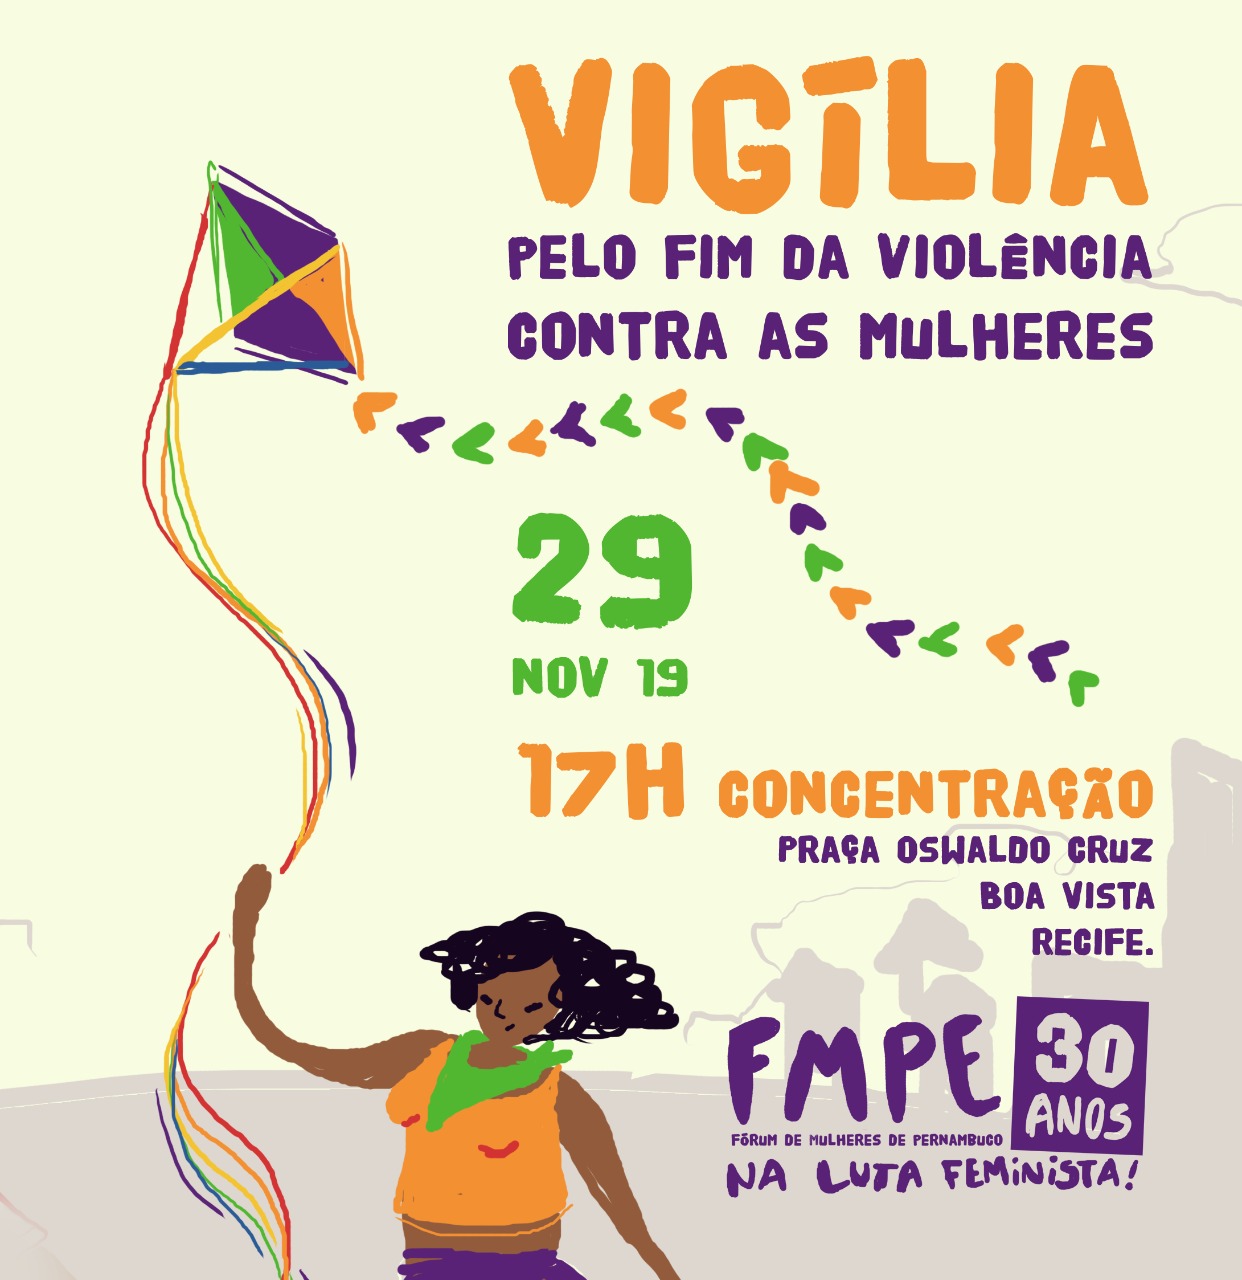 Fórum de Mulheres de Pernambuco realiza vigília pelo fim da violência contra as mulheres﻿